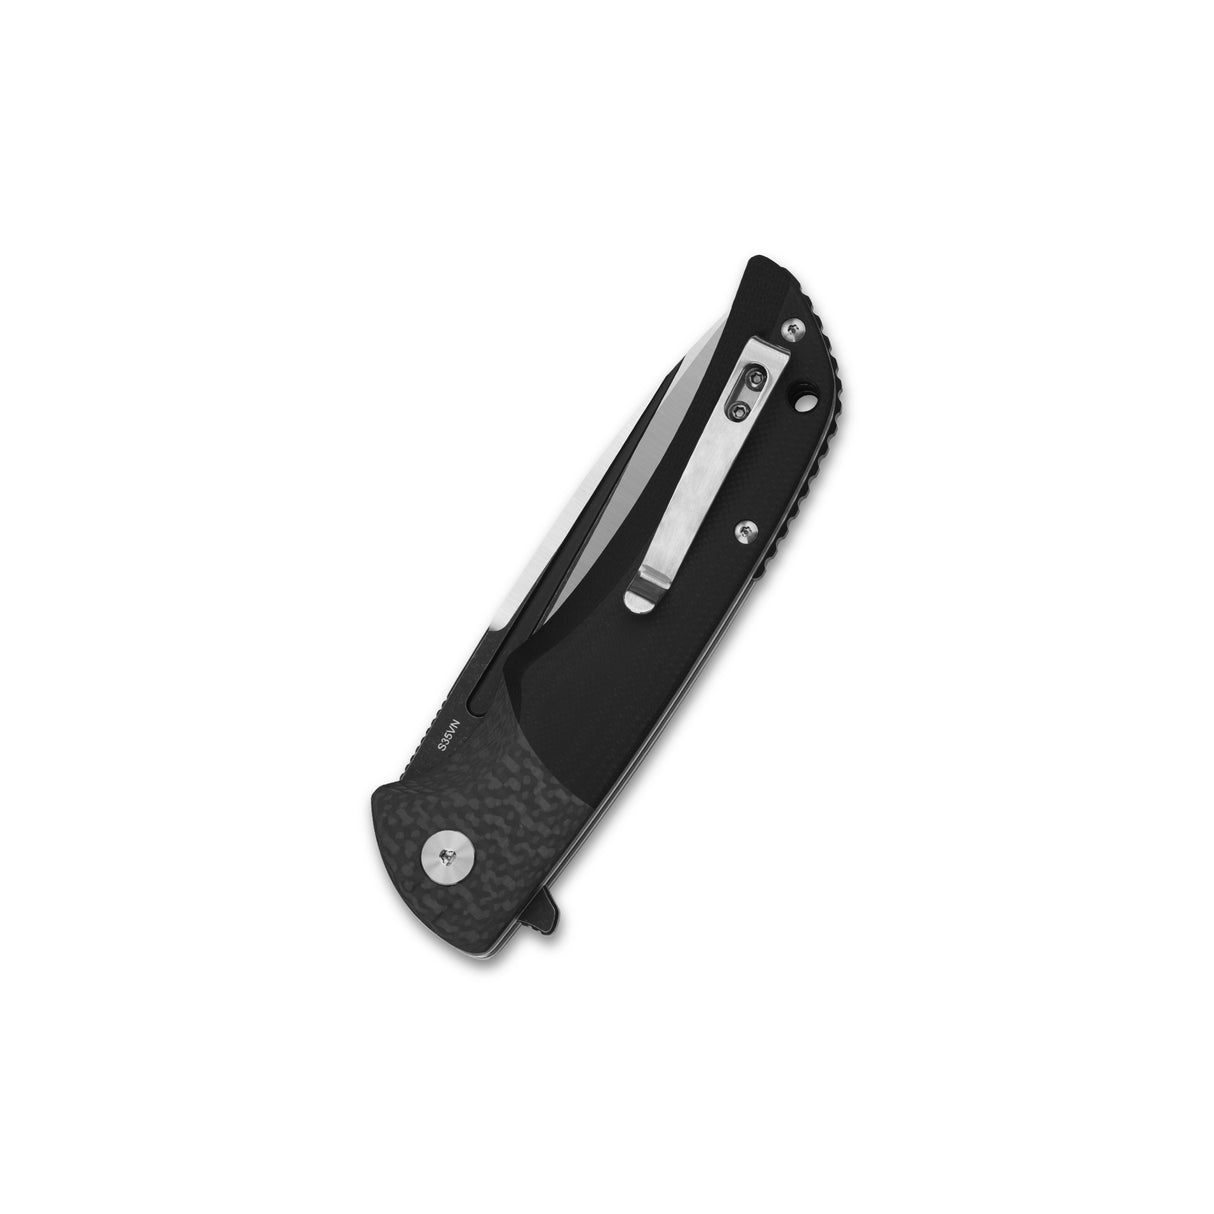 QSP Harpyie Liner Lock Pocket Knife S35VN Blade Carbon Fiber w/G10 Handle